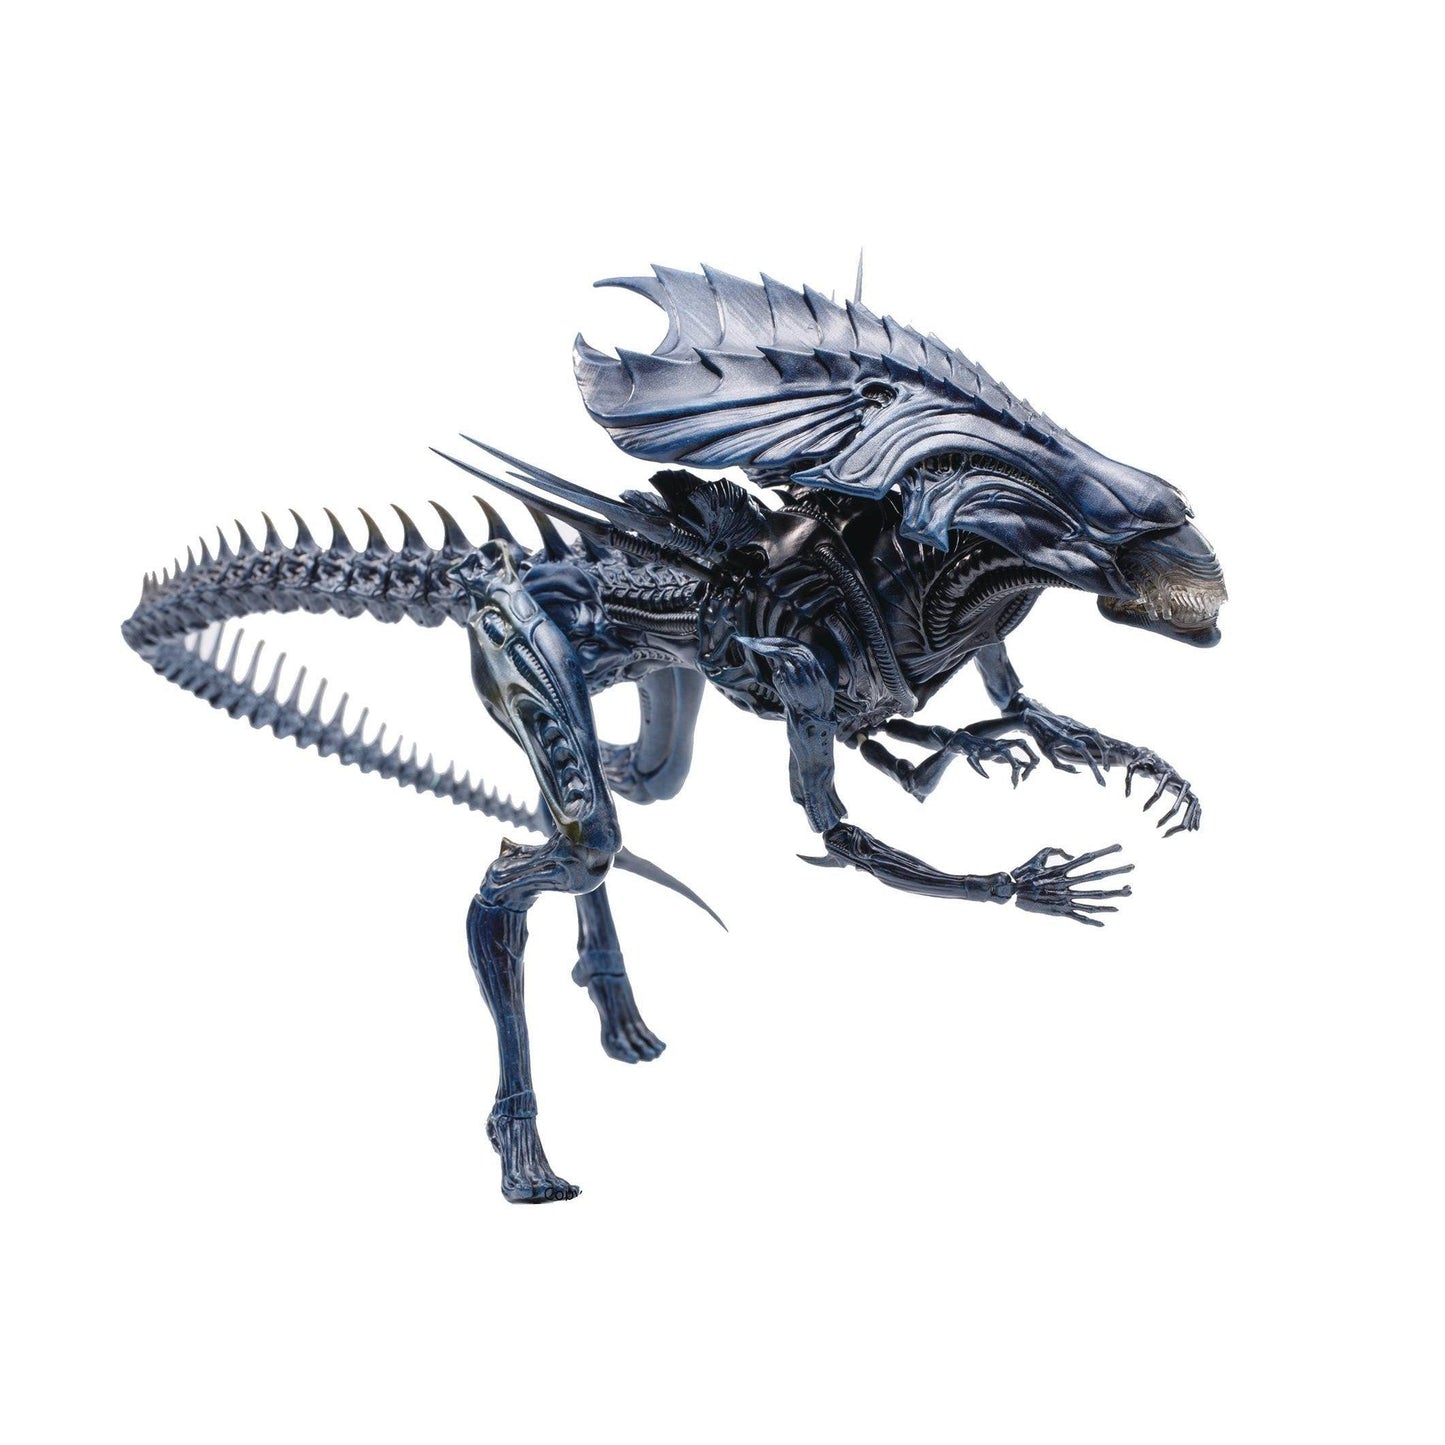 AVP Alien Queen 1/18 Scale Figure - PX Exclusive